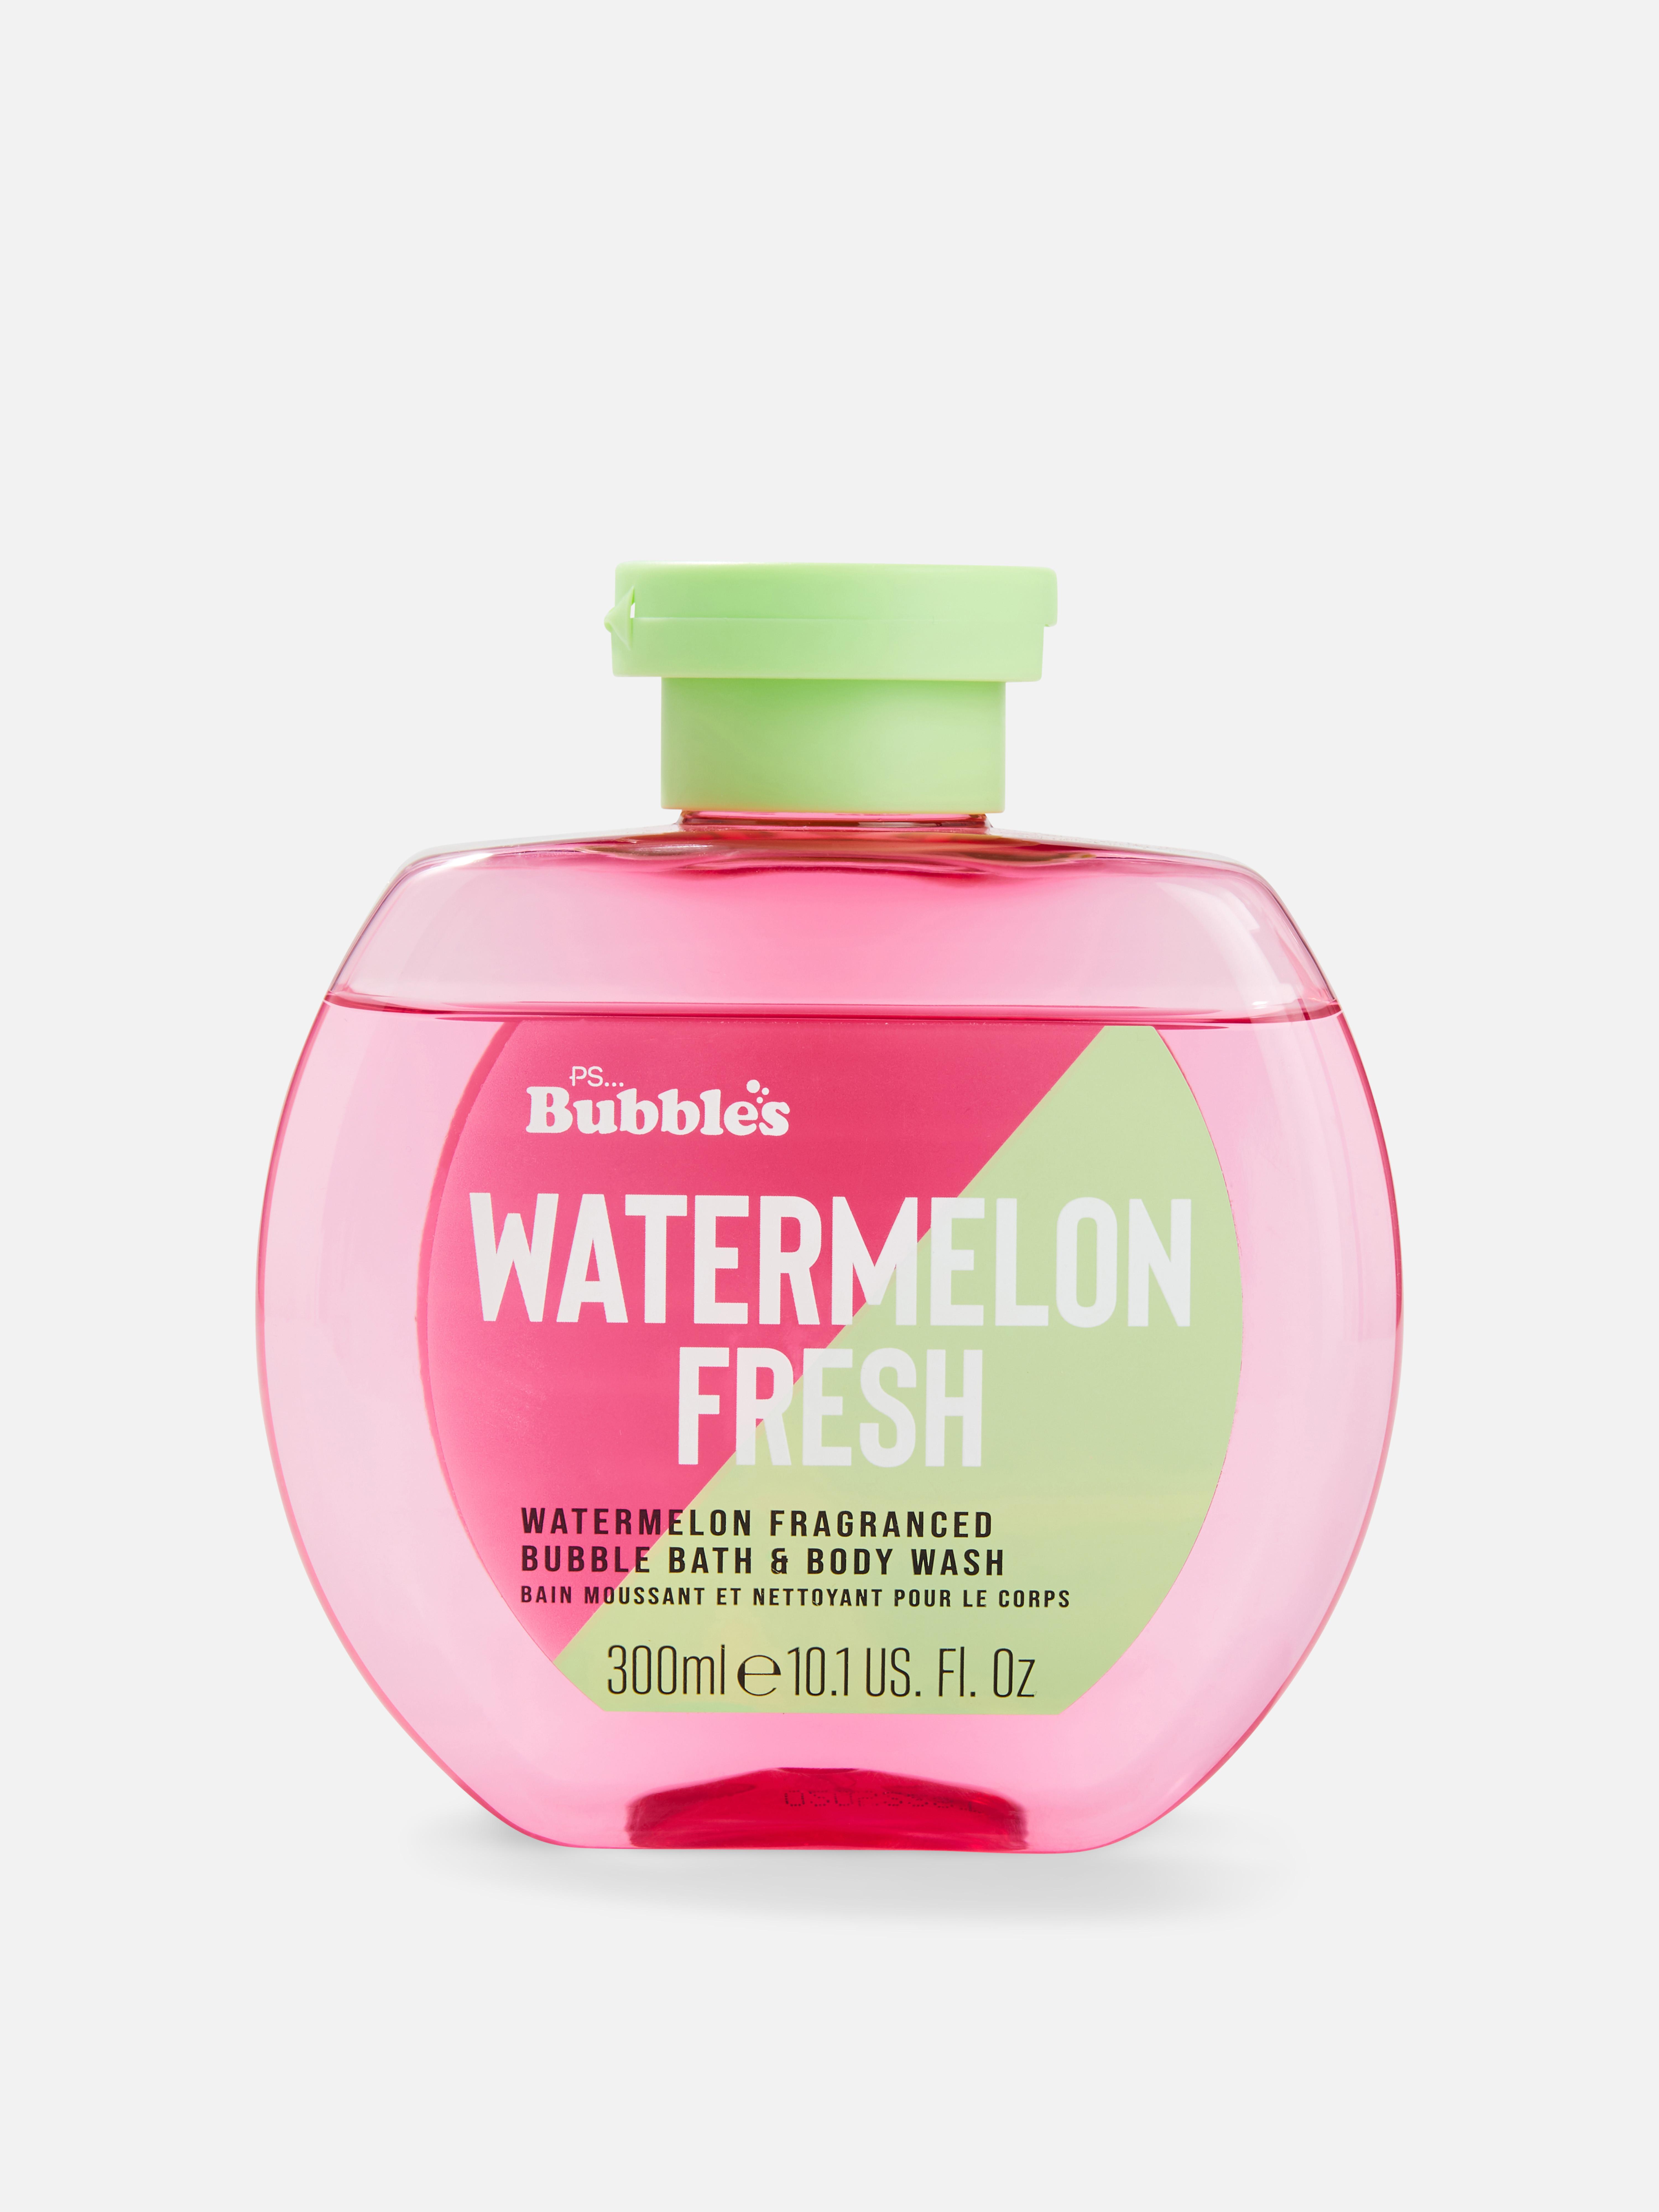 PS... Bubbles Watermelon Body Wash & Bubble Bath